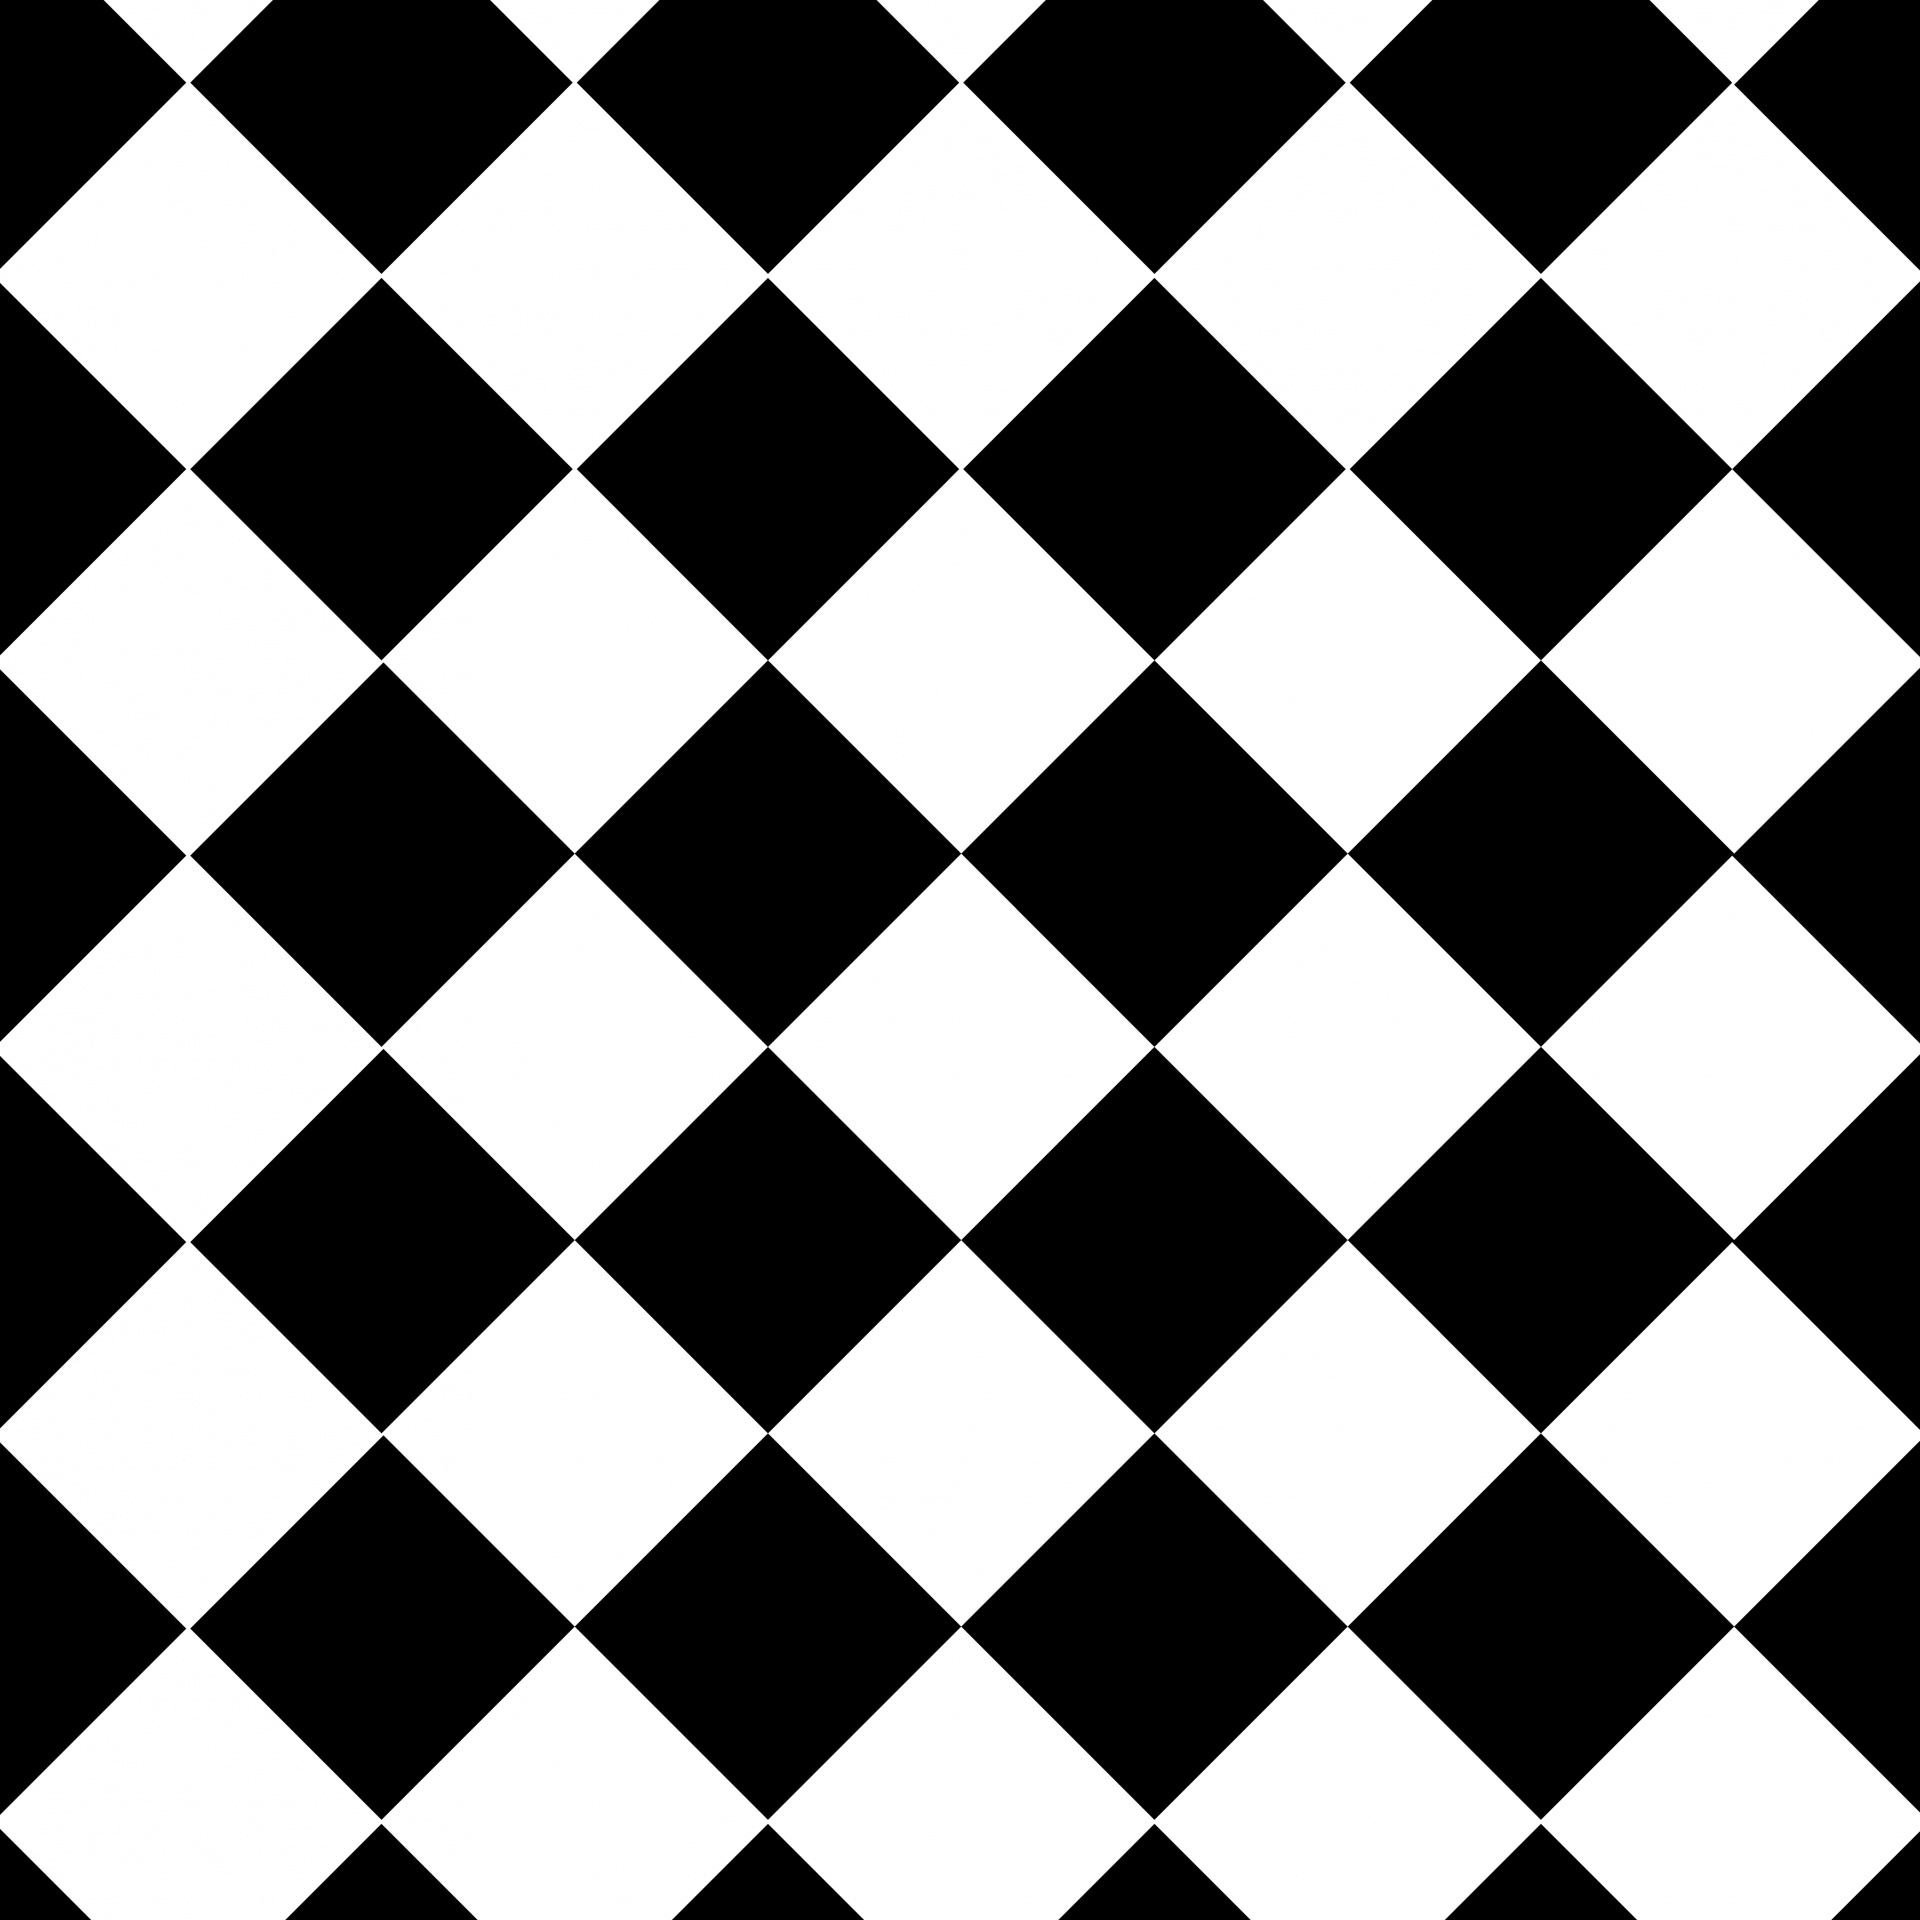 タイルパターン壁紙,黒,パターン,黒と白,モノクロ写真,ゲーム